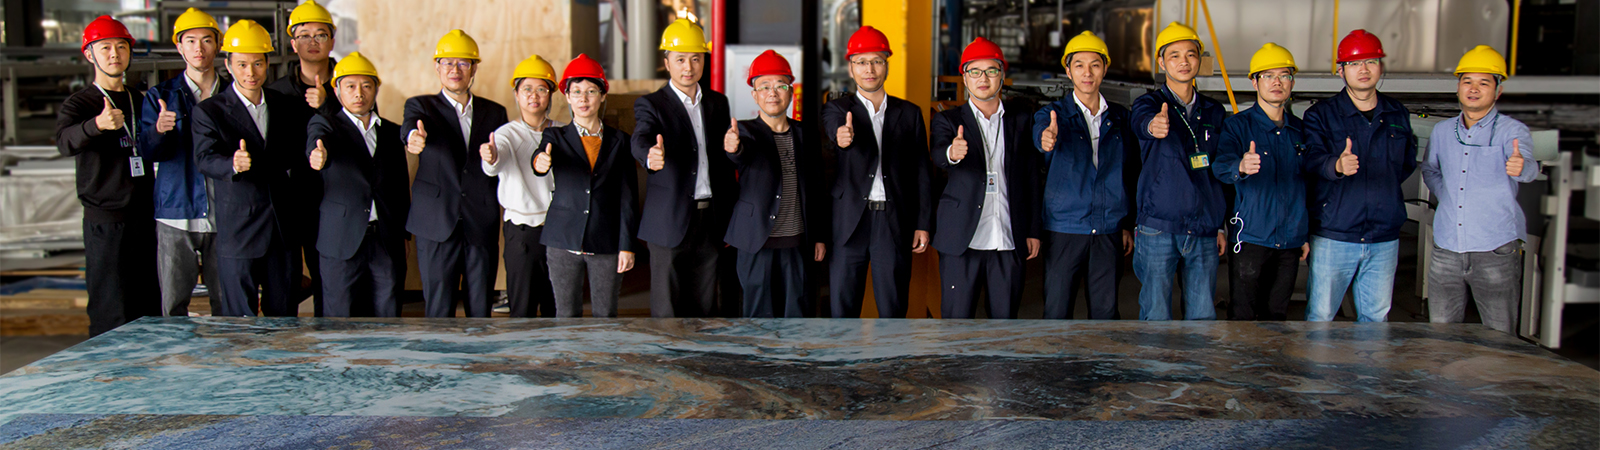 Monalisa réalise avec SACMI le carreau grand format céramique le plus grand au monde